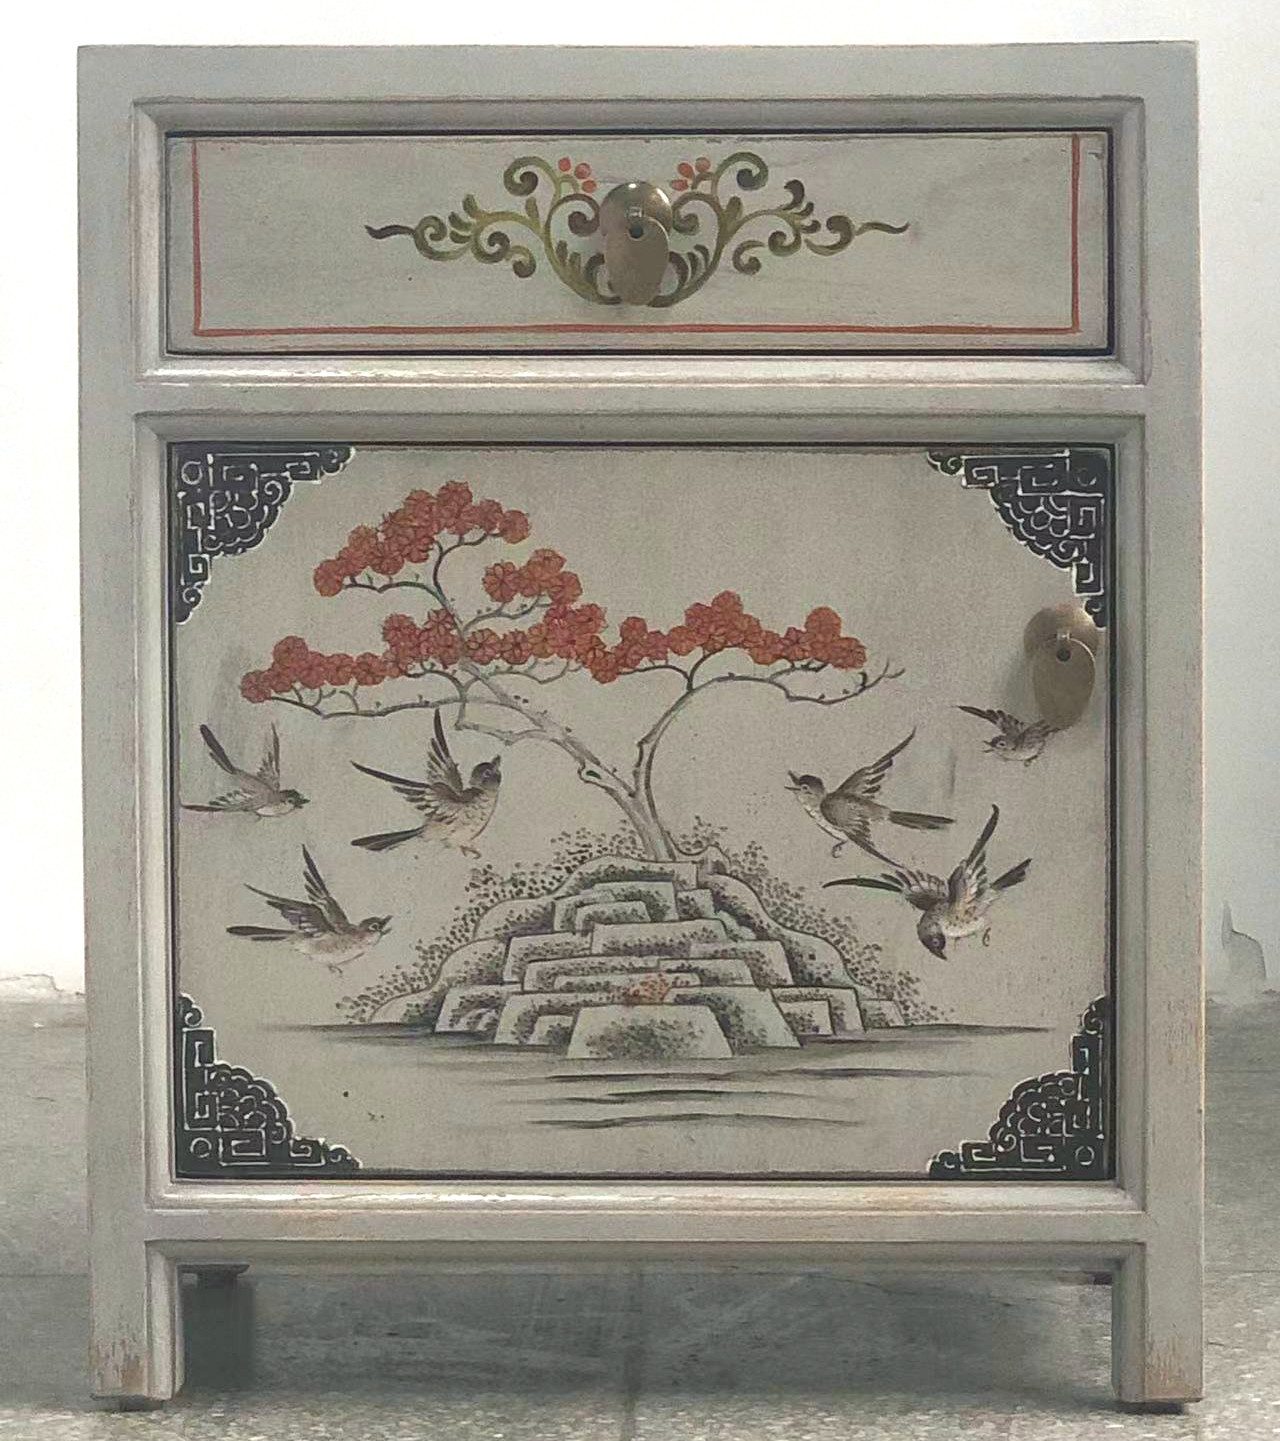 Chinese bedside table "Vintagefog" - Art. 35191-12